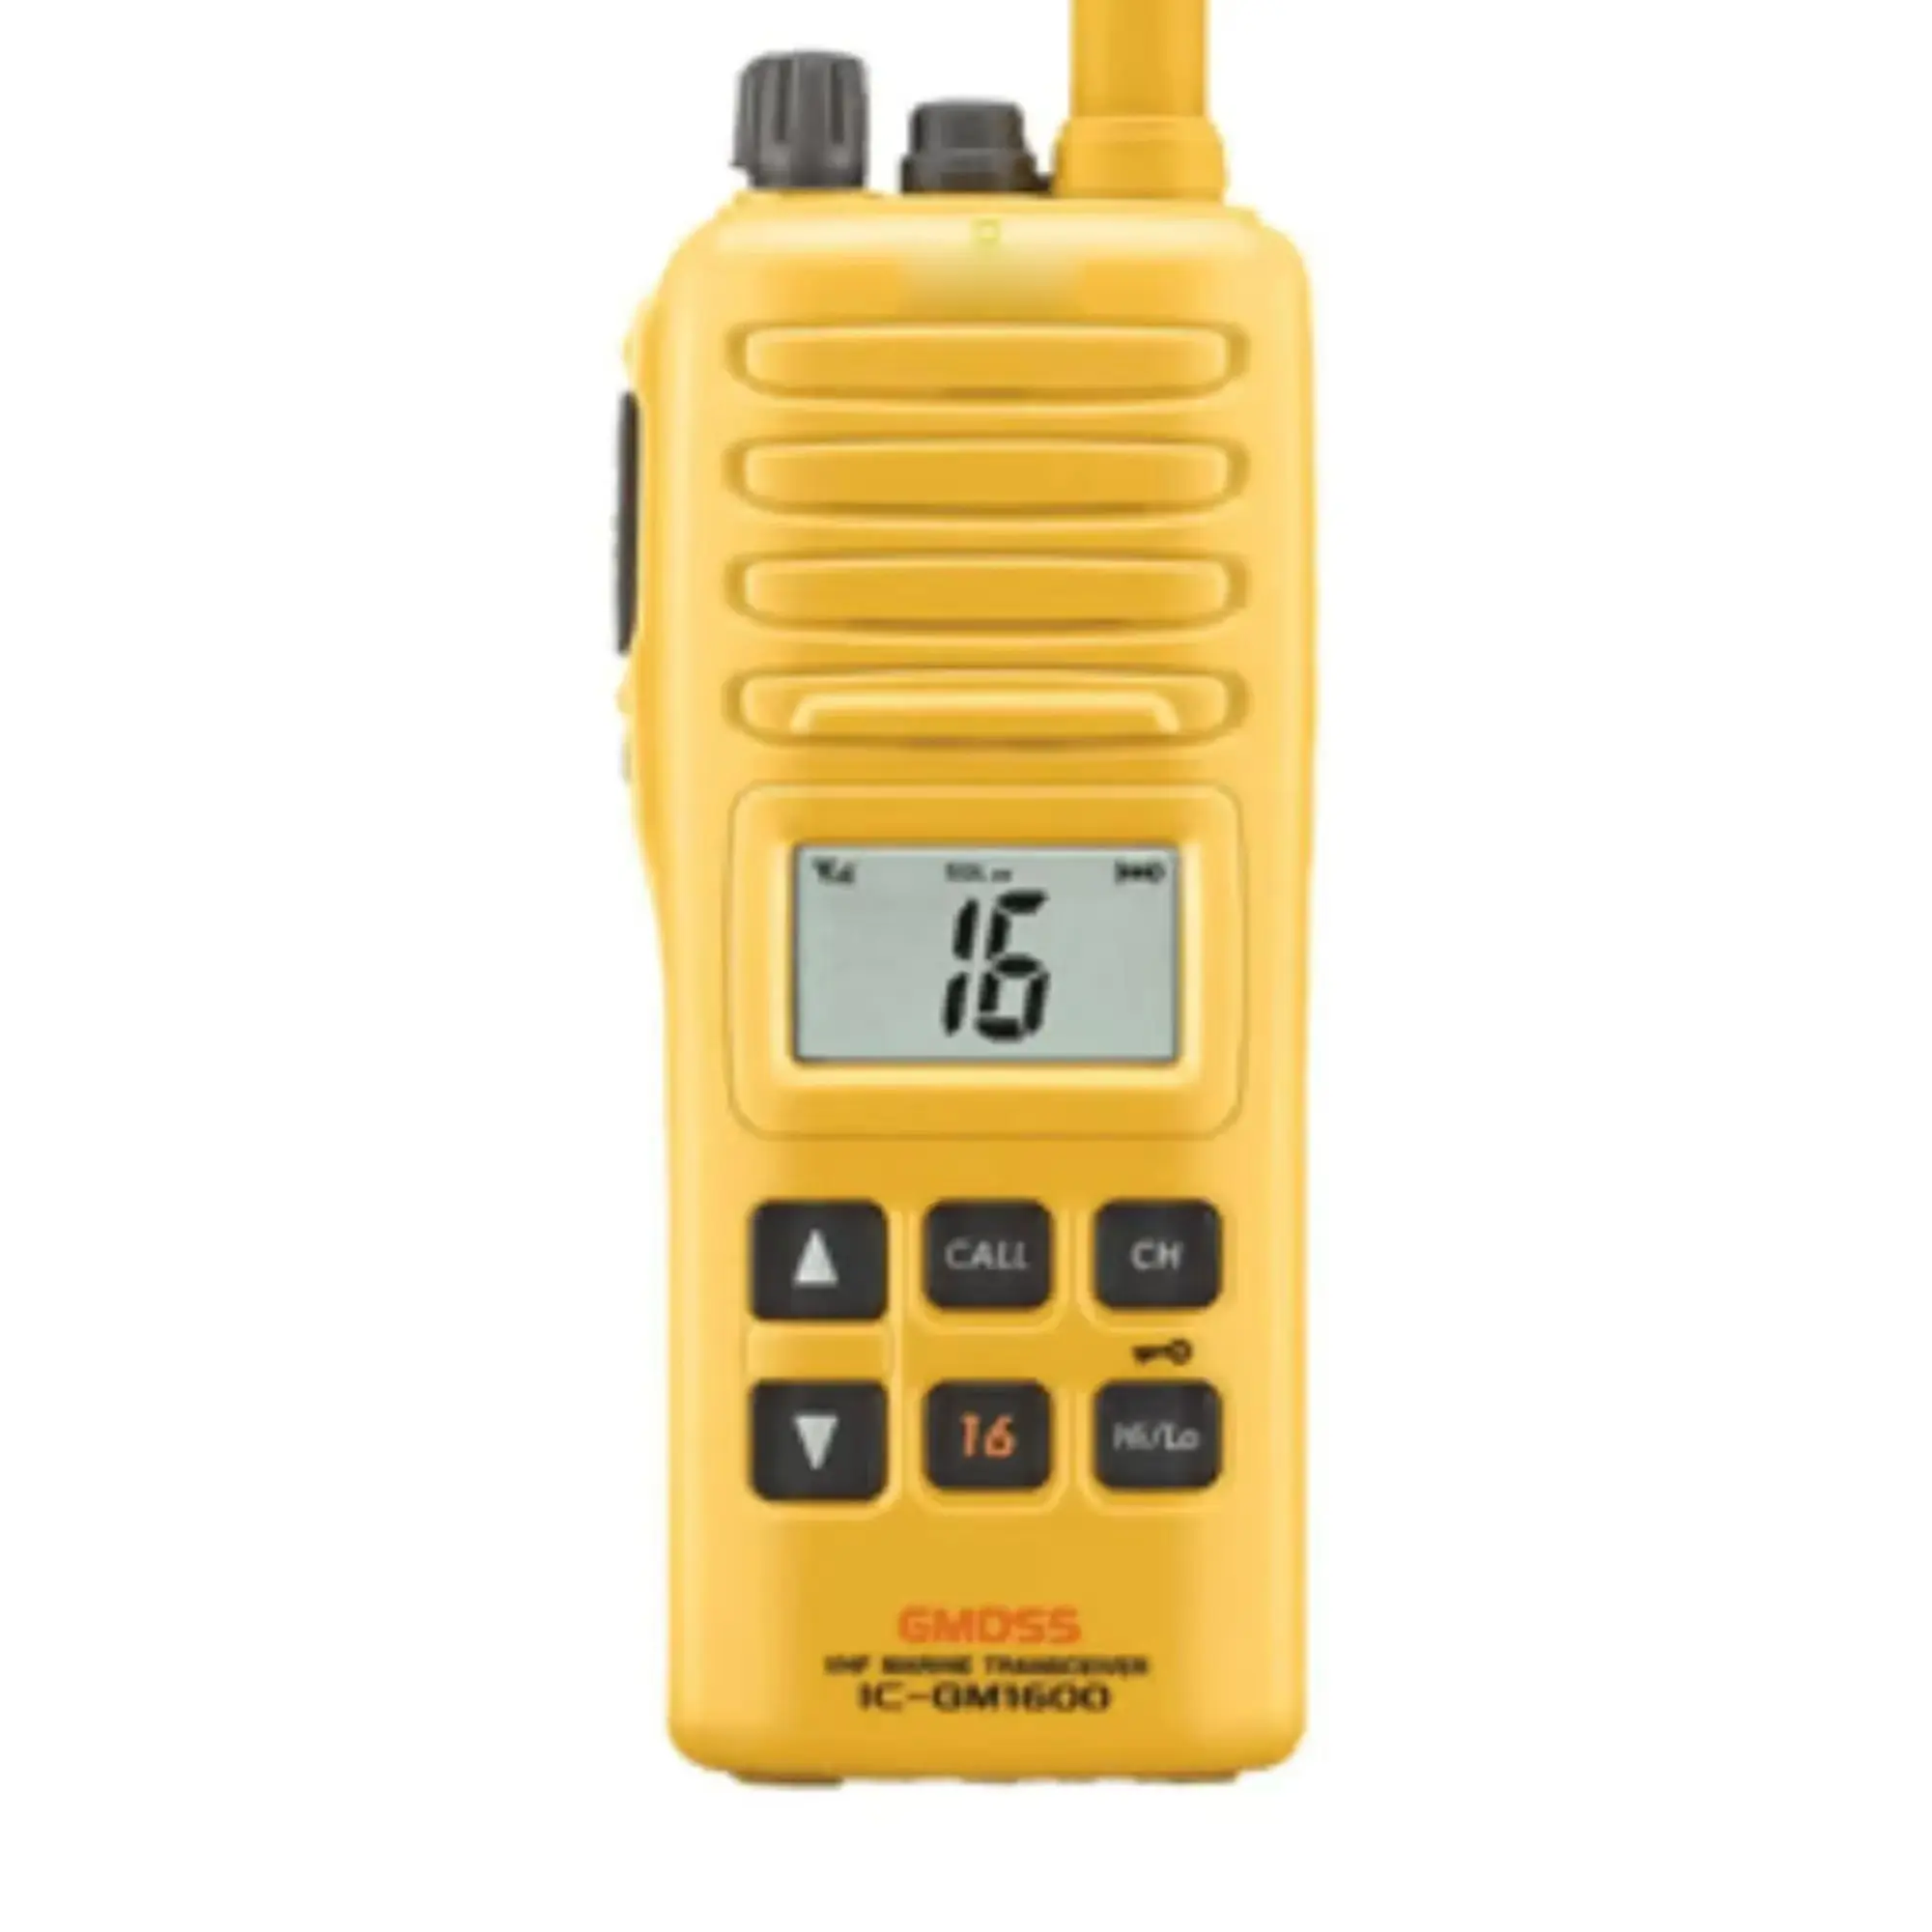 ForIcom IC-GM1600E Radio bidirezionale marine VHF portatile GMDSS portatile per mezzi di sopravvivenza compatti e potenti di pubblica sicurezza